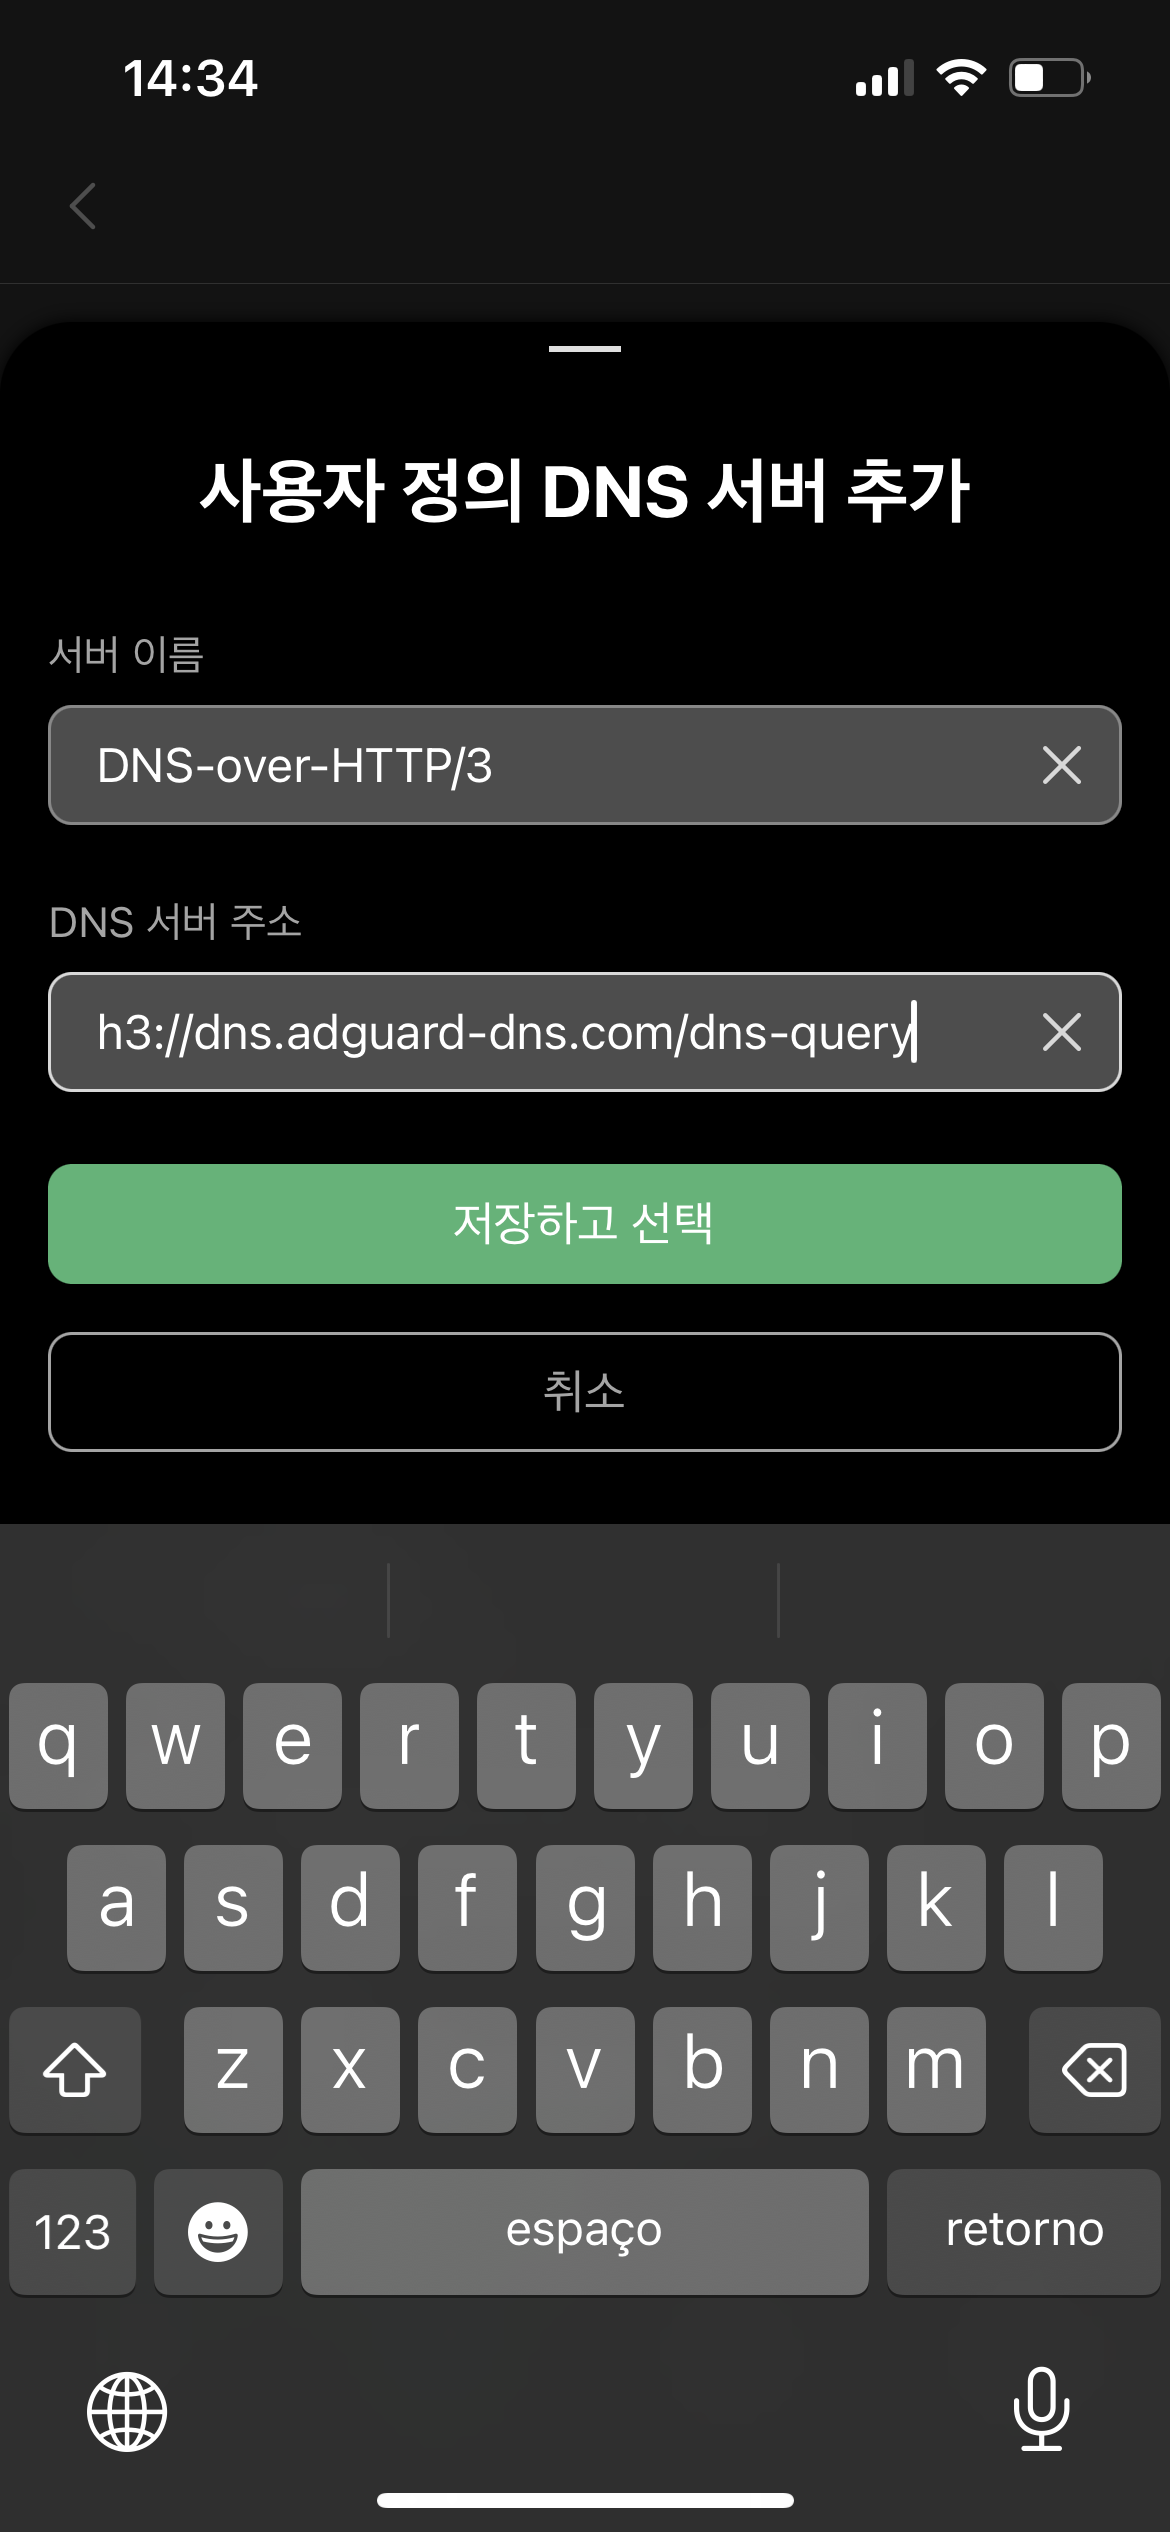 Adding a custom DNS server *mobile